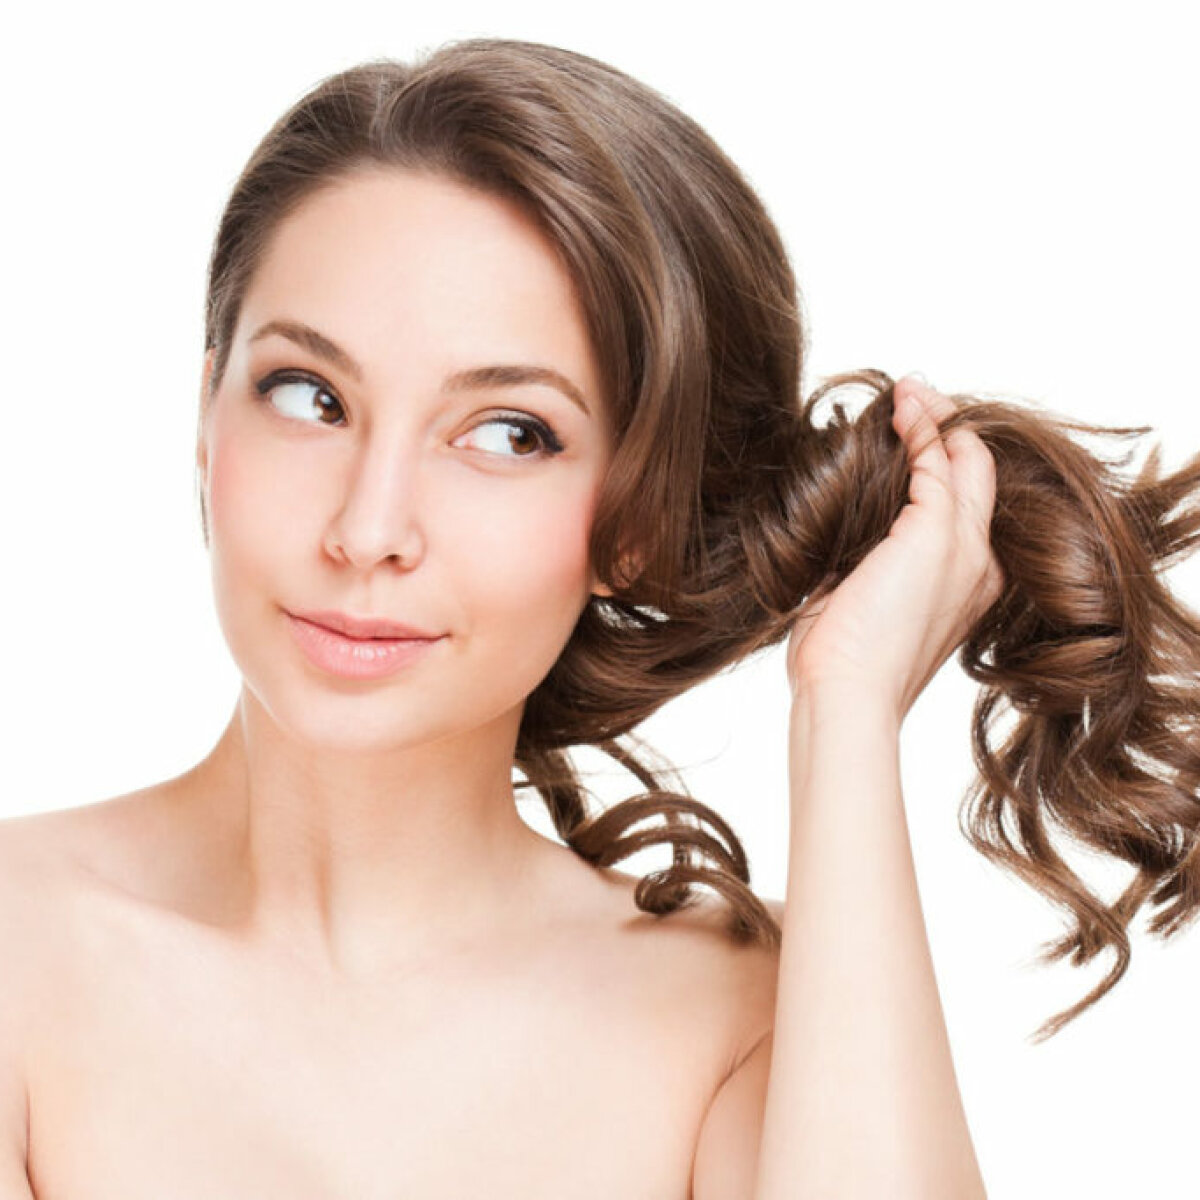 Рецепты масок для роста волос в домашних условиях, как отрастить длинные волос